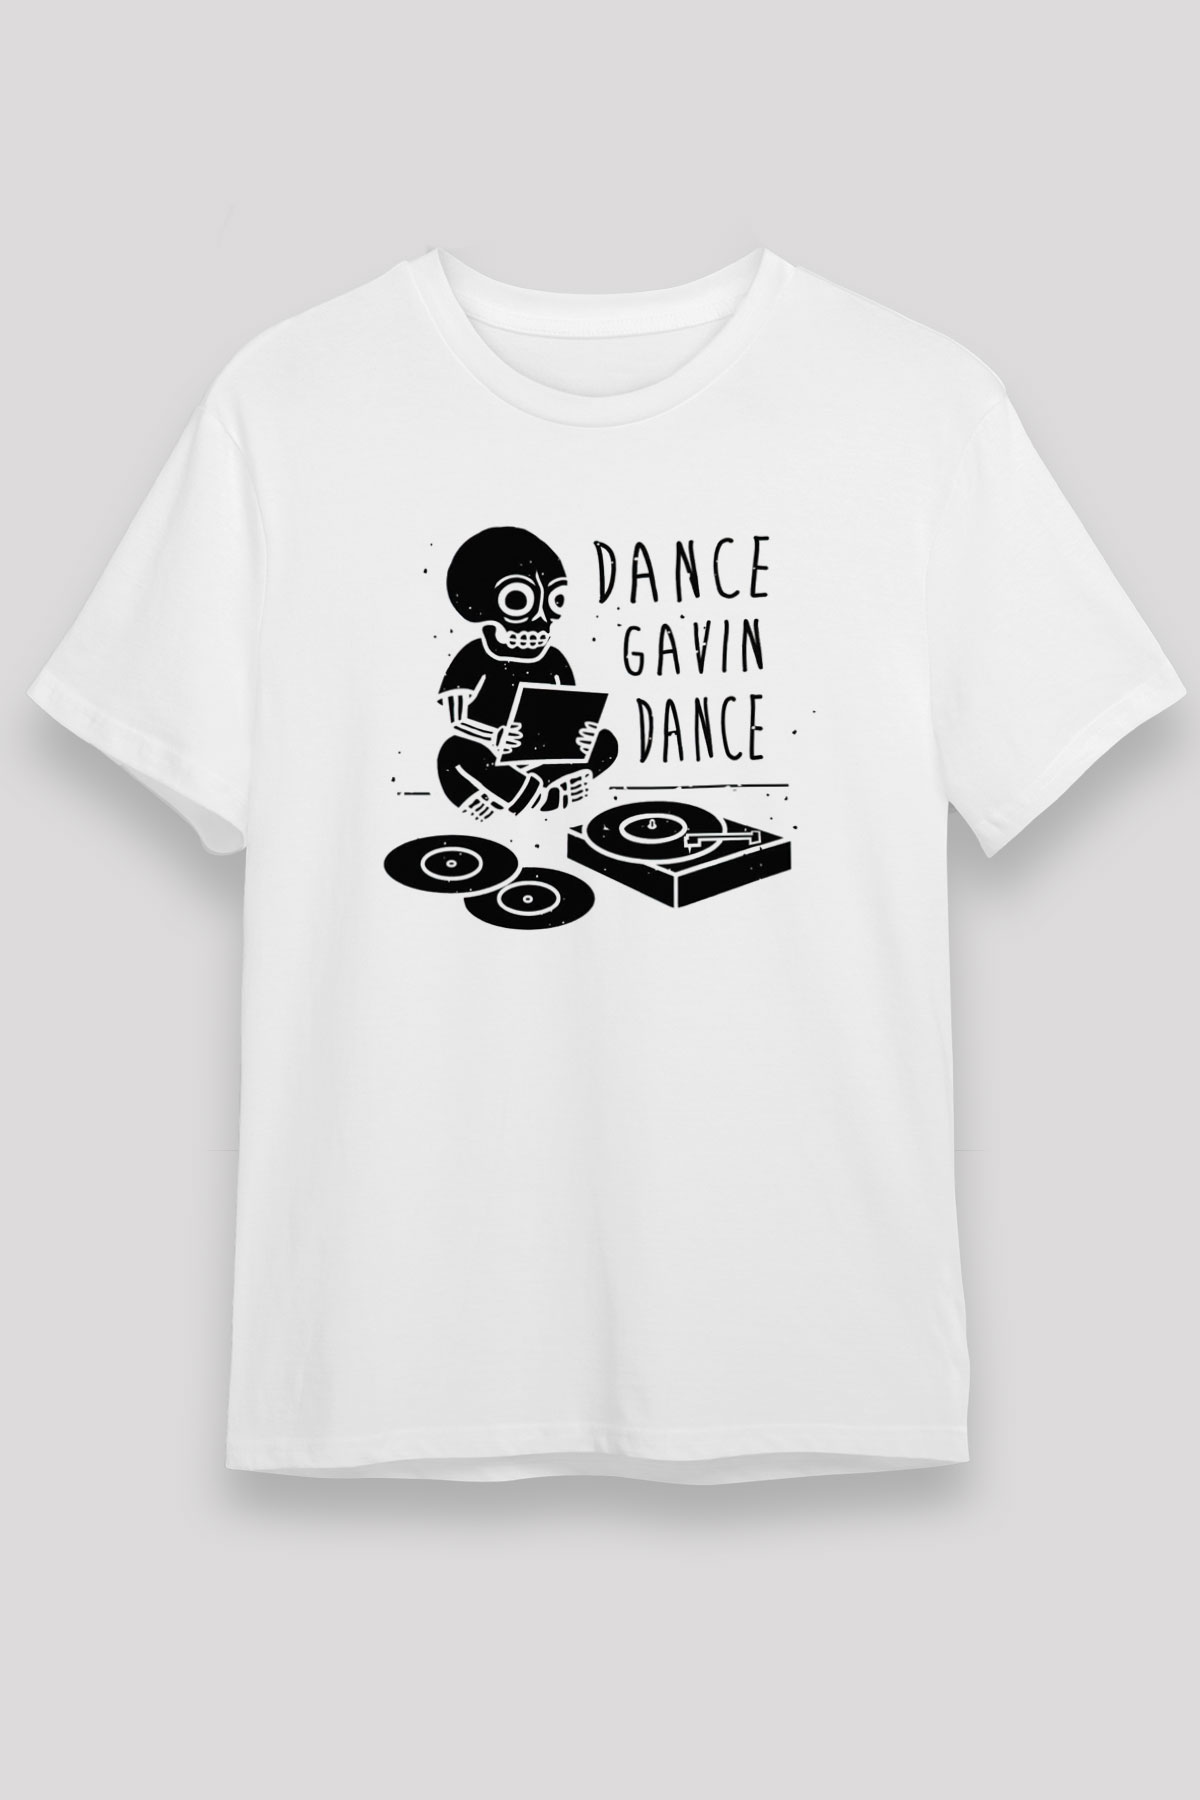 Dance Gavin Dance T shirt, Music Band Tshirt 01/